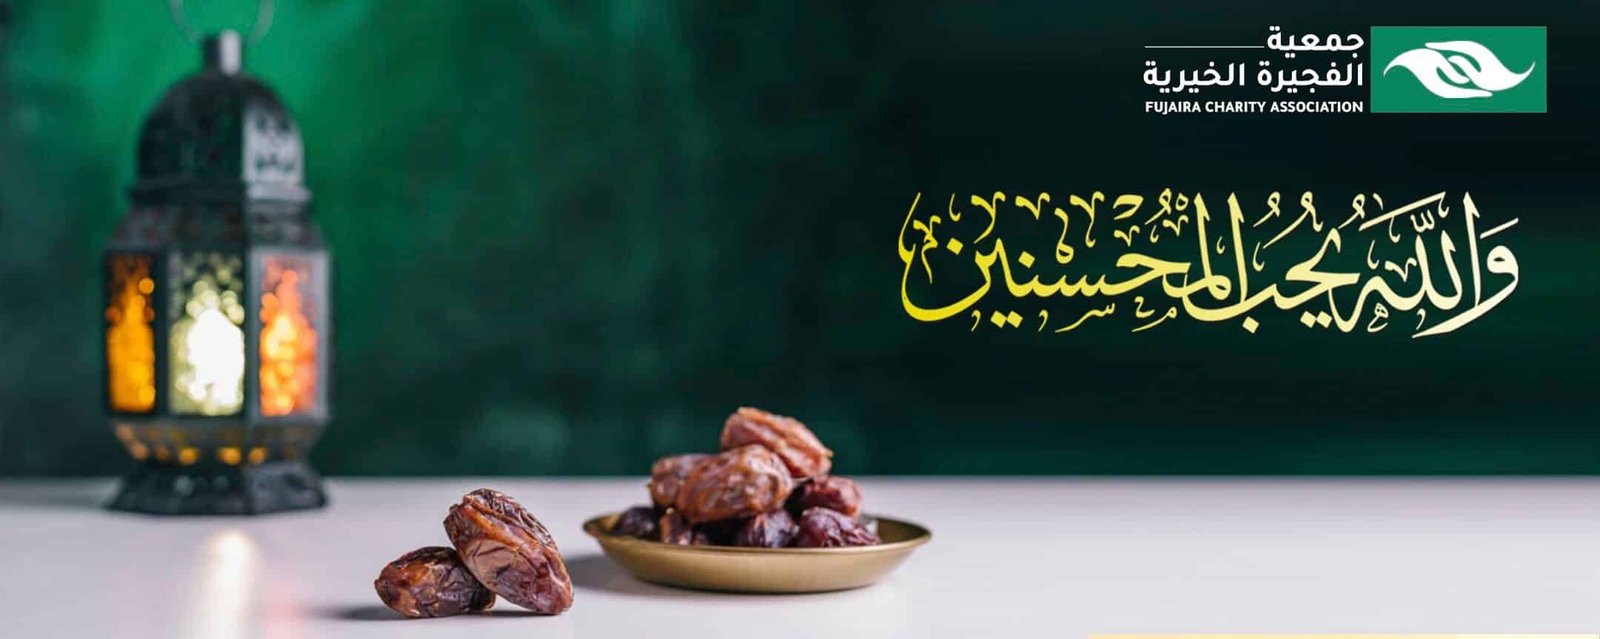 جمعية الفجيرة الخيرية | رمضان copy 4 1